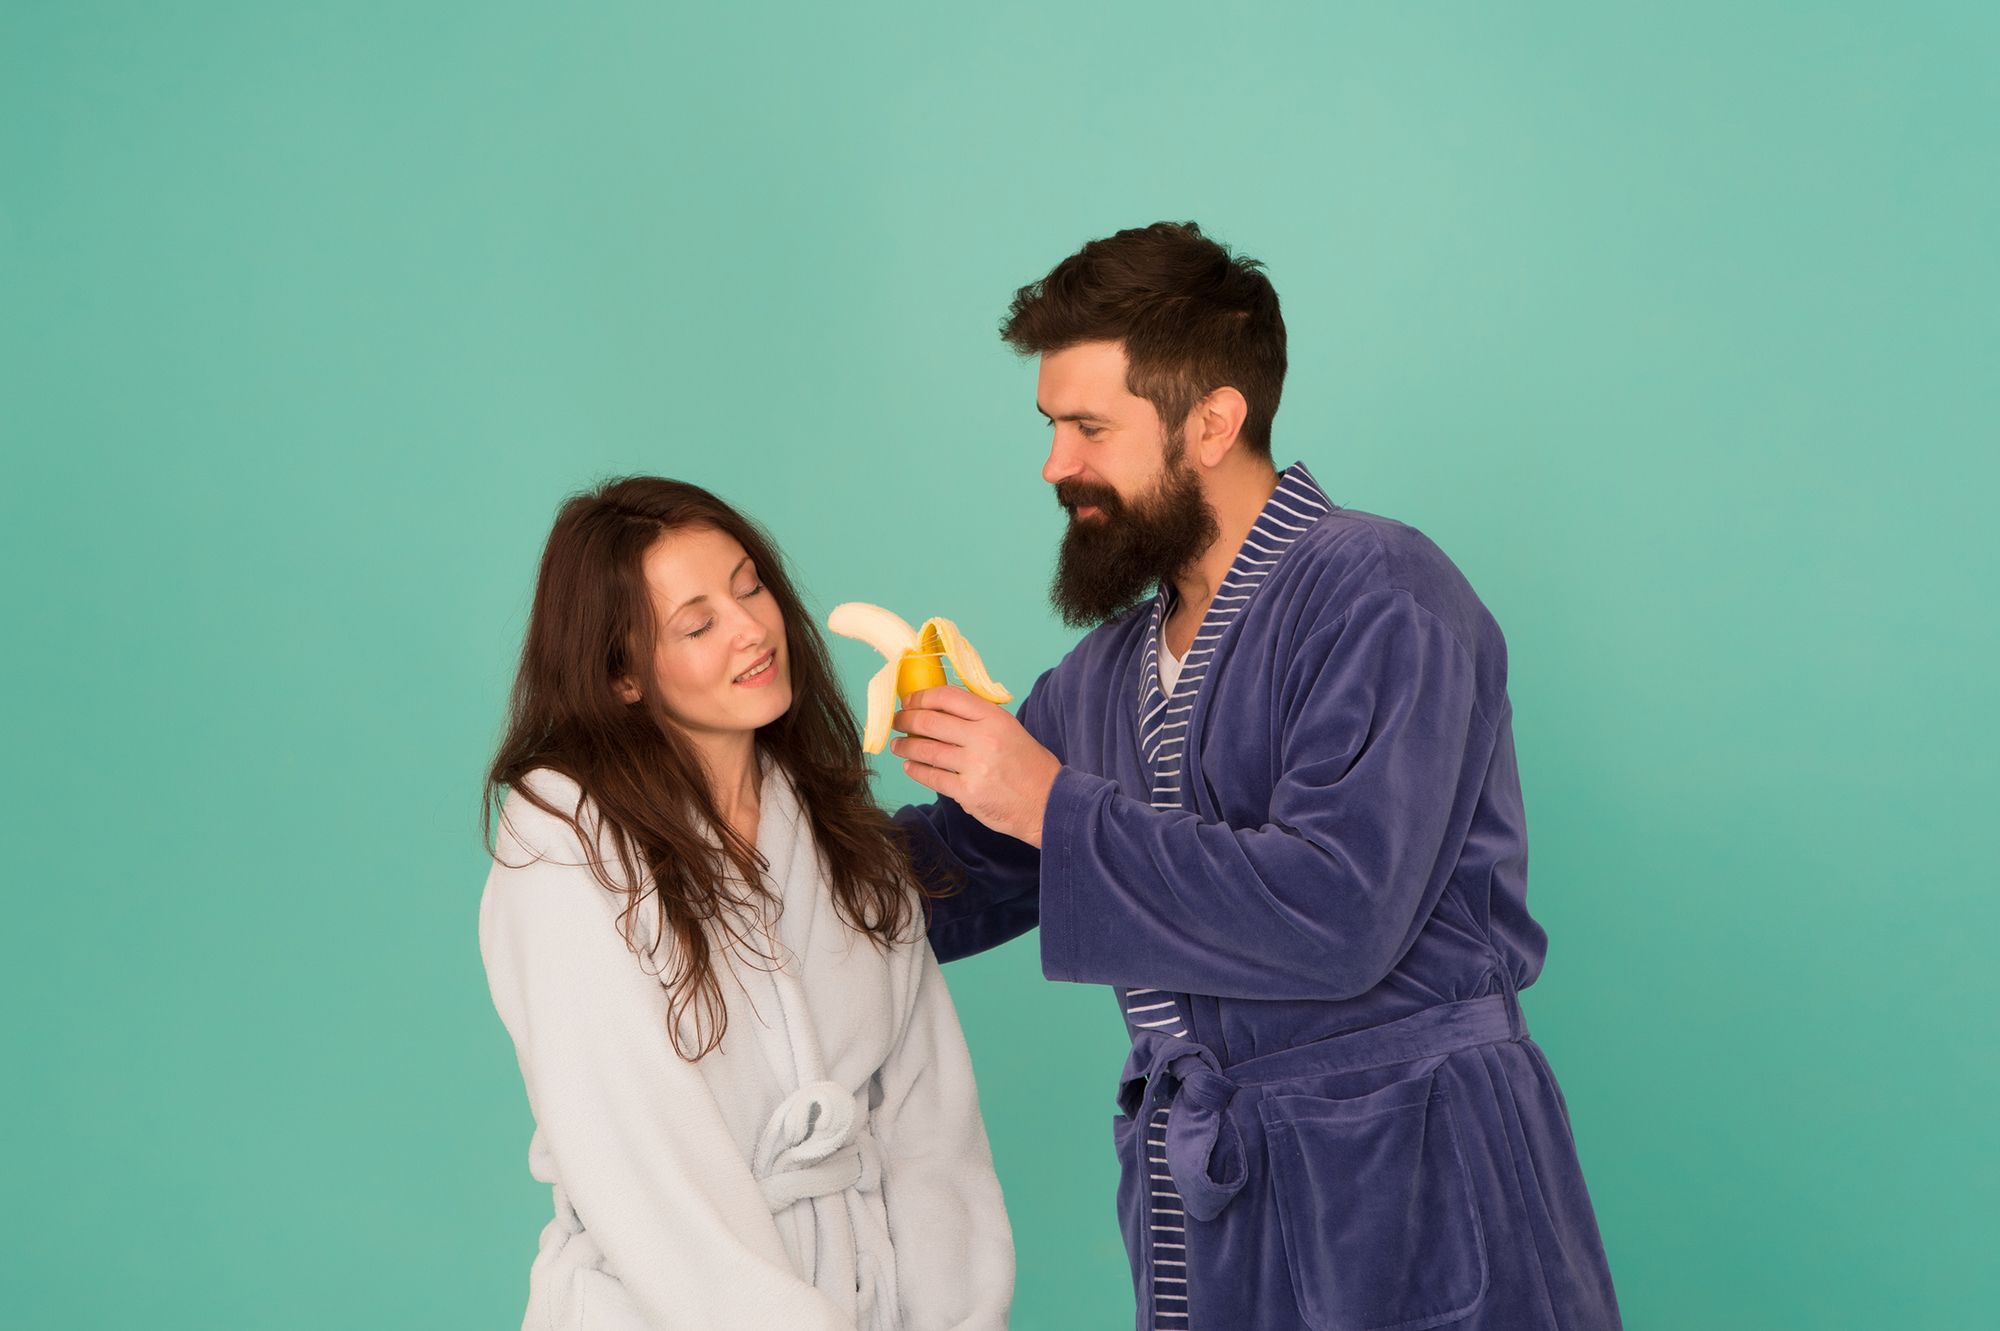 Mann hält Frau eine Banane hin